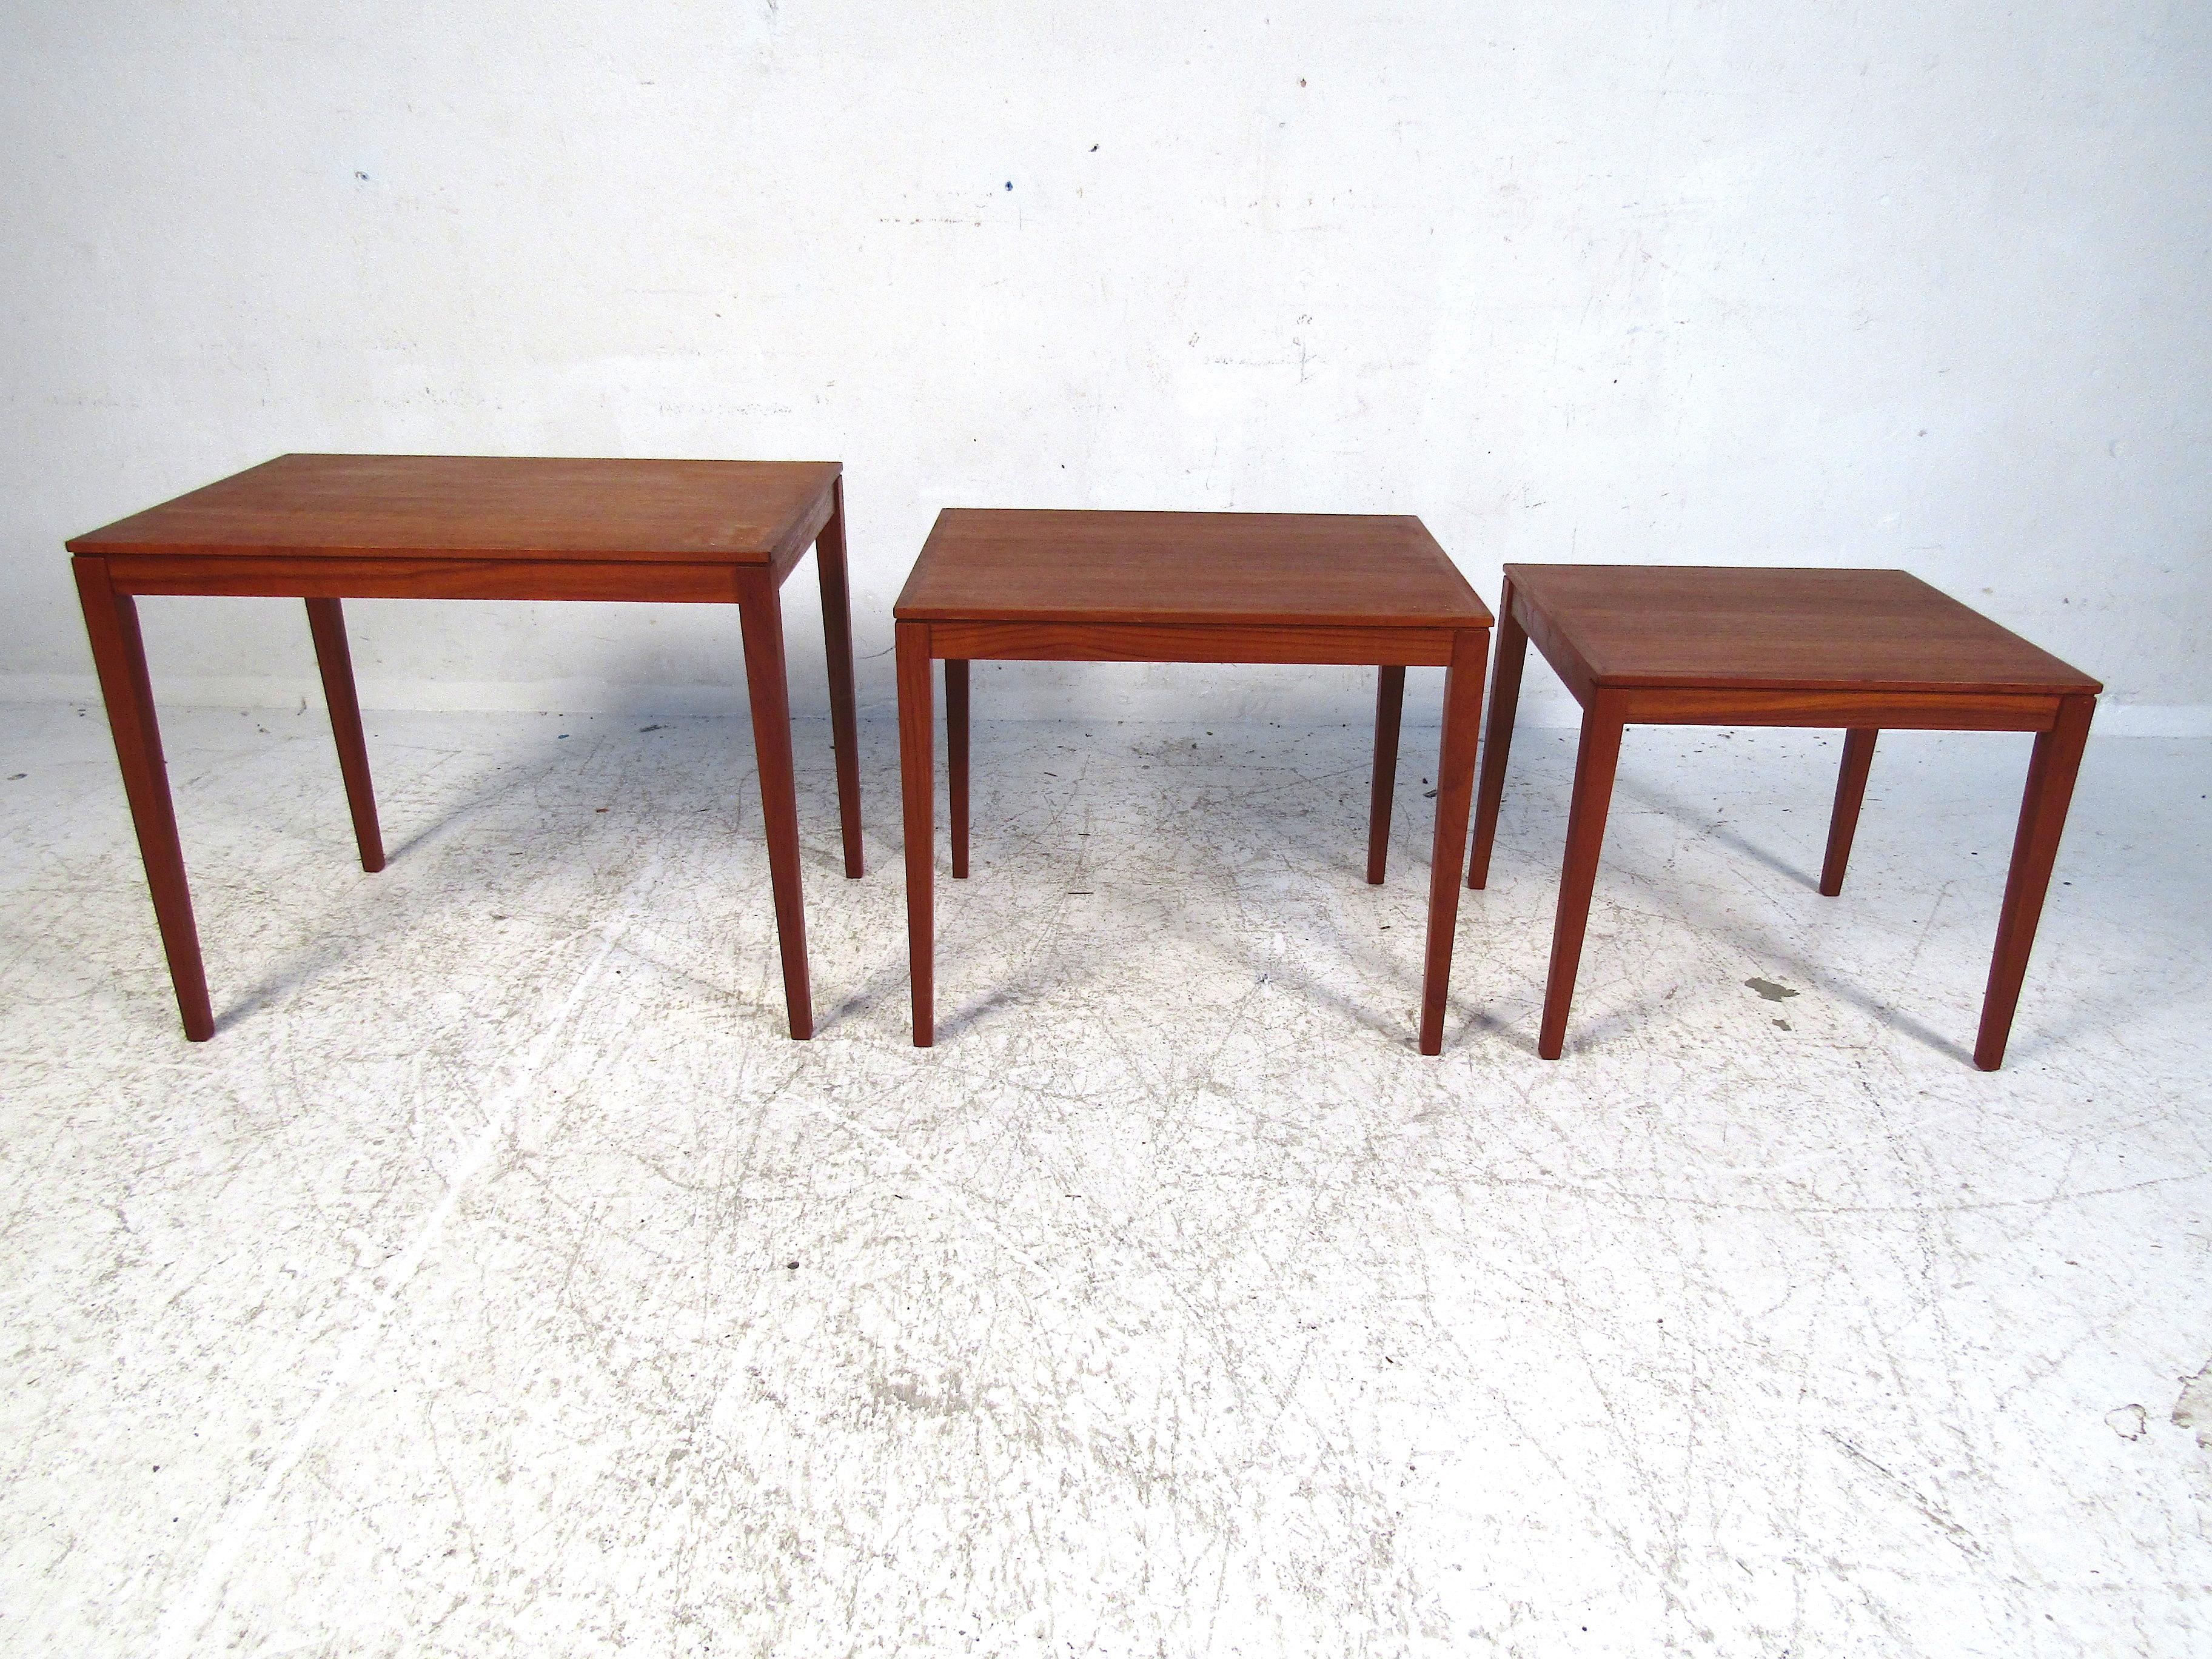 Cet élégant ensemble de tables gigognes danoises de Bent Silberg est parfait pour tout salon ou pièce d'appoint. Avec sa construction minimaliste, cet ensemble ajoute un sens audacieux du style sans dominer l'espace. Fabriquées pour durer, ces